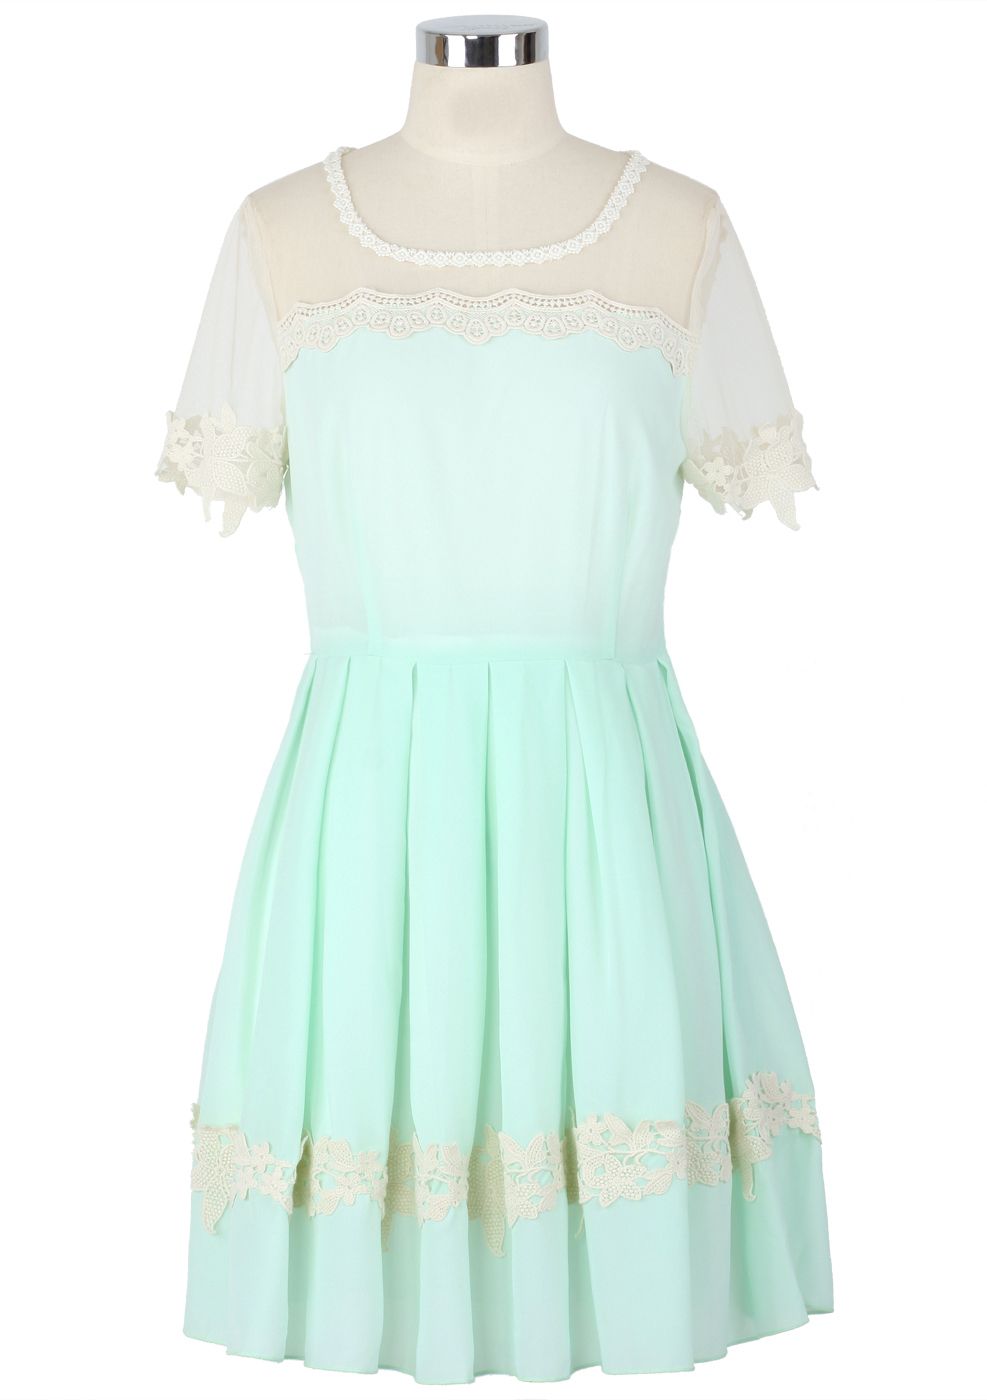 Dolly Floral Lace Trim Mint Dress